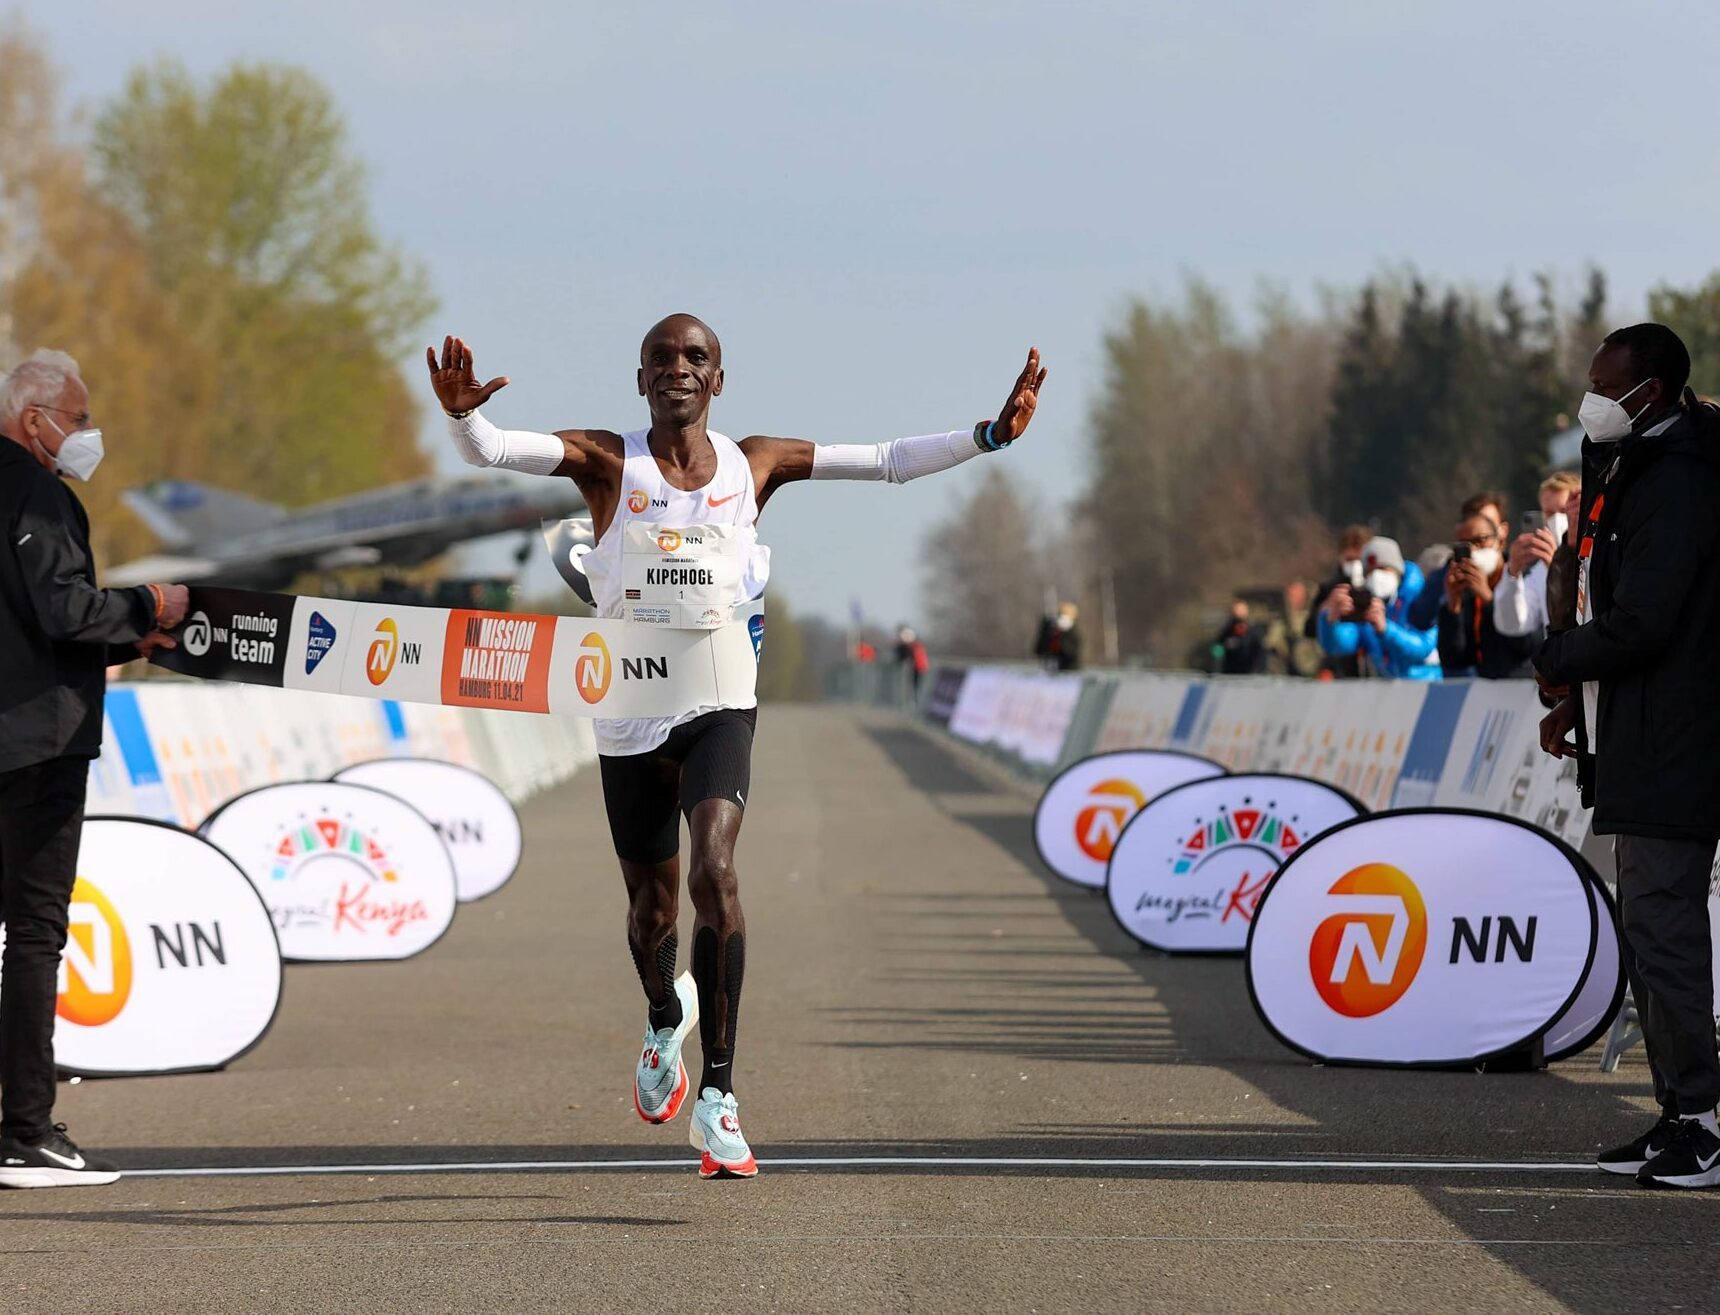 早已雀屏入選肯亞奧運馬拉松代表的Eliud Kipchoge，兩週前也順利地以2:04:30的成績完成東奧前最後一次調整賽。相較於衣索比亞的紊亂不明，肯亞顯得老神在在、勢在必得(照片來源: Let’s Run.com)